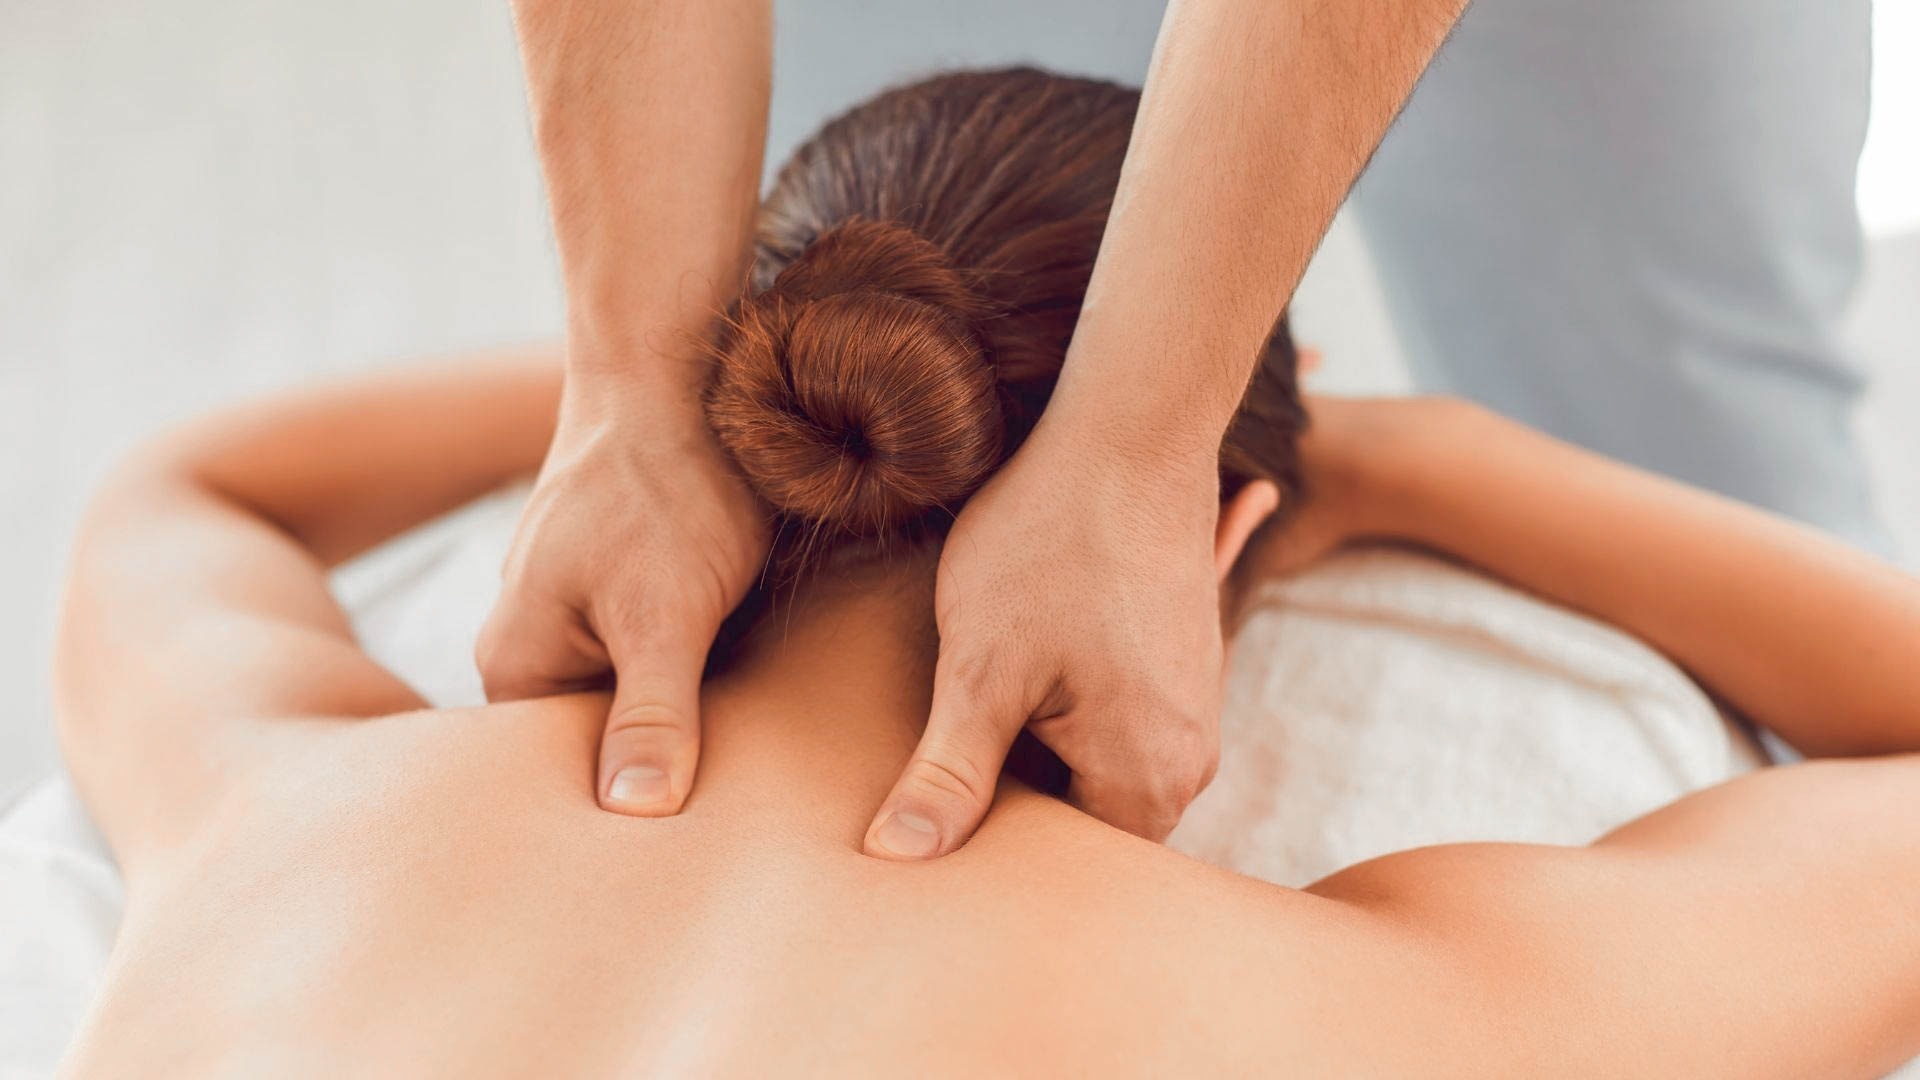 una mujer recibe un masaje en la espalda por un hombre